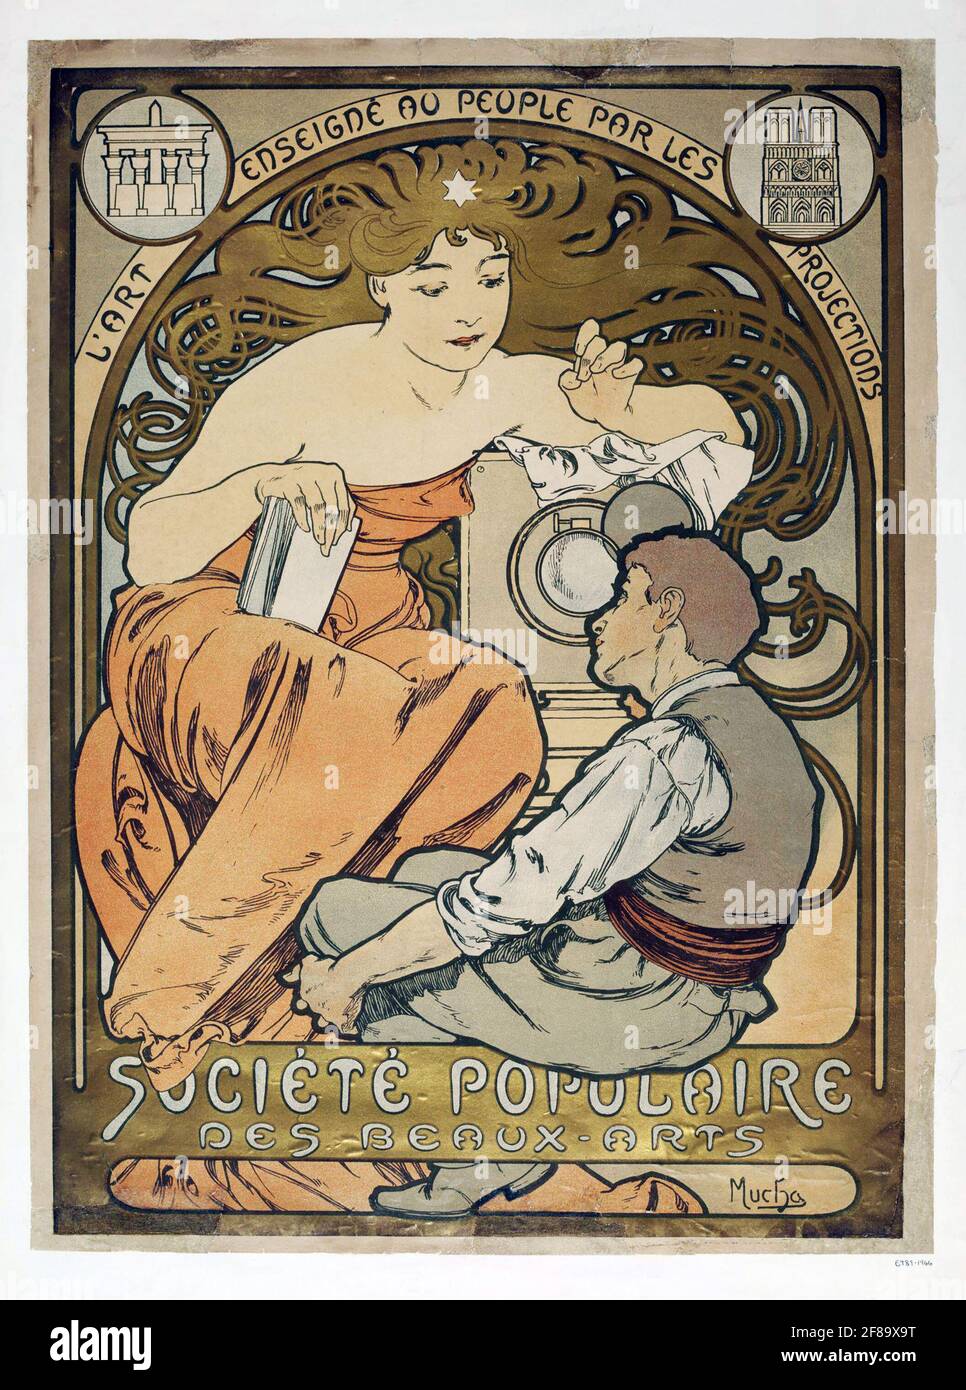 De onze Intact Entertainment Societe Populaire des Beaux-Arts – Art Nouveau by Alphonse Mucha ca. 1897  Stock Photo - Alamy